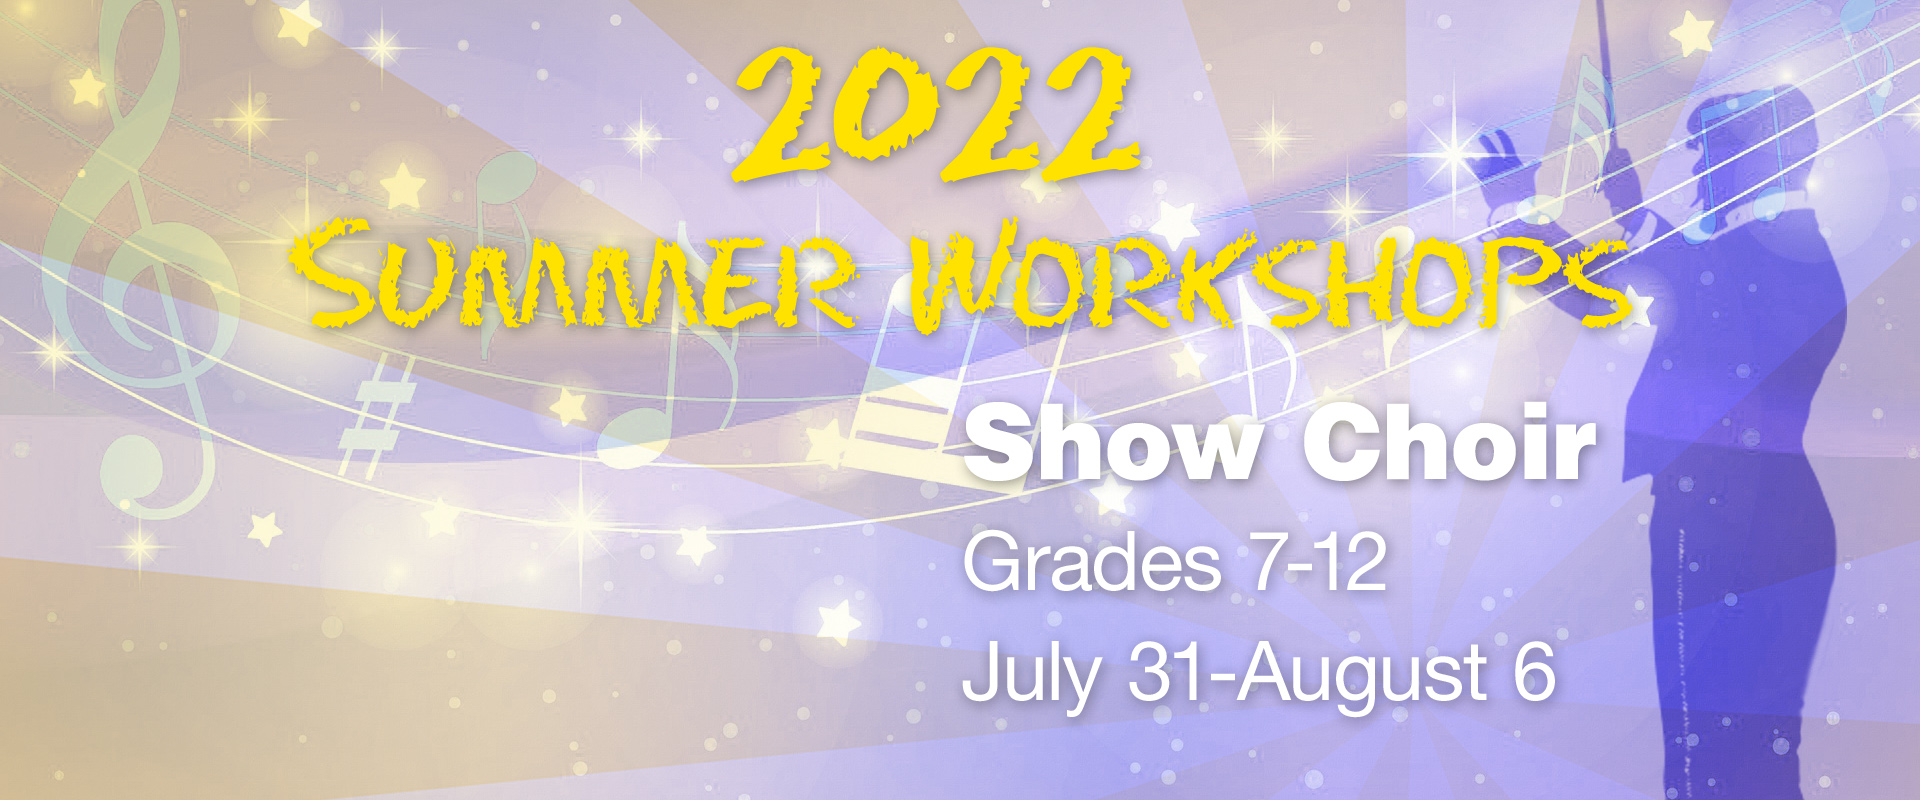 summer workshops image